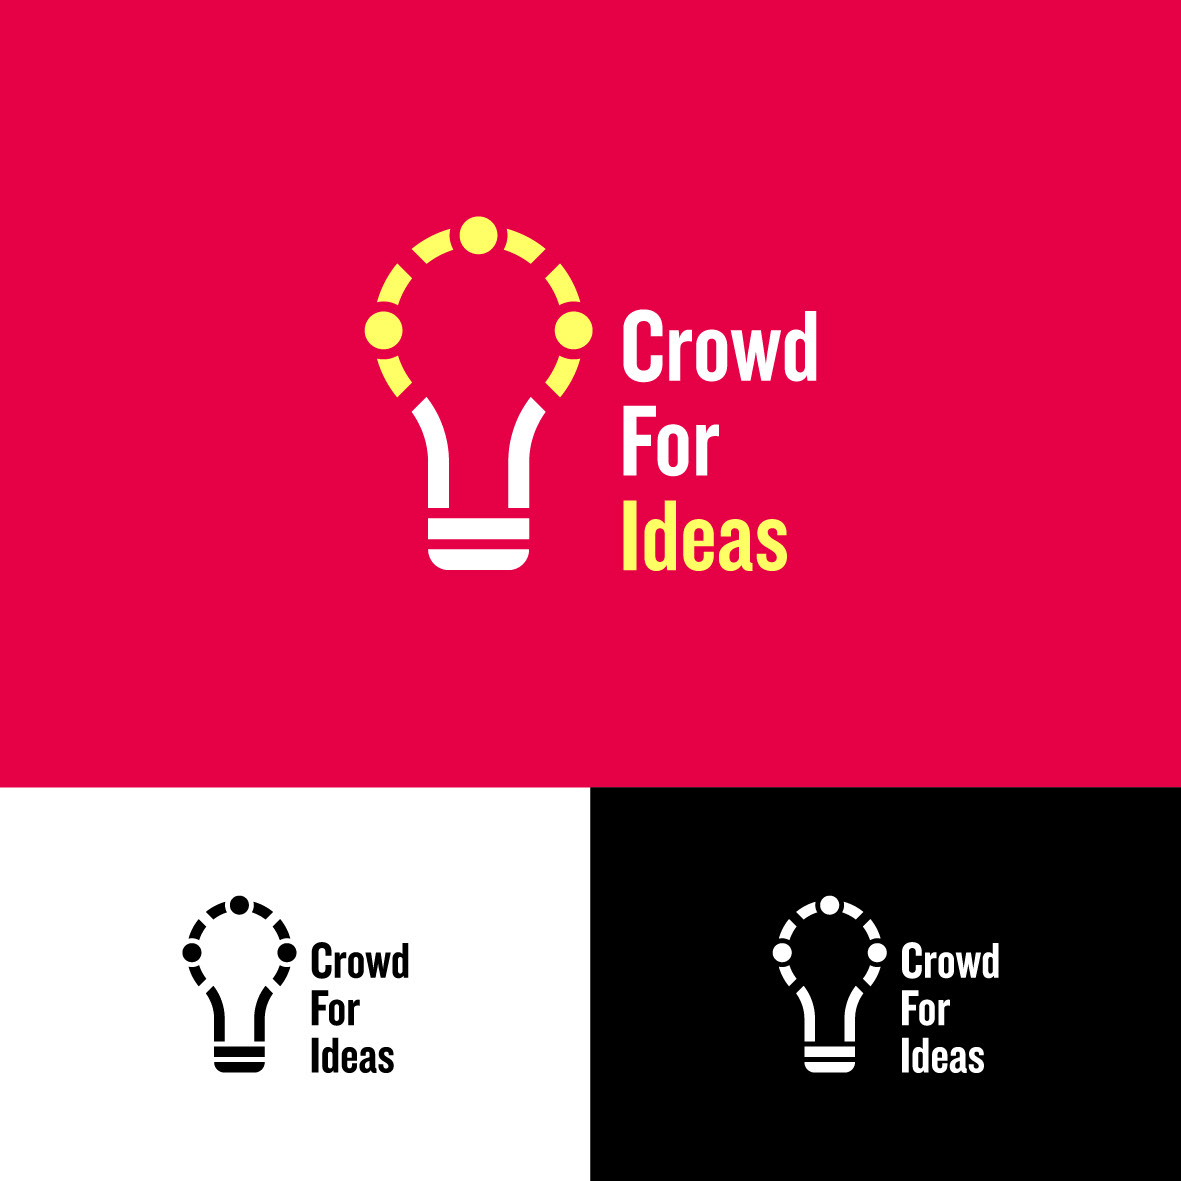 crowdfunding crowdforideas regionelombardia territorio giovani Startup innovazione idea comunità lavoro politichegiovanili